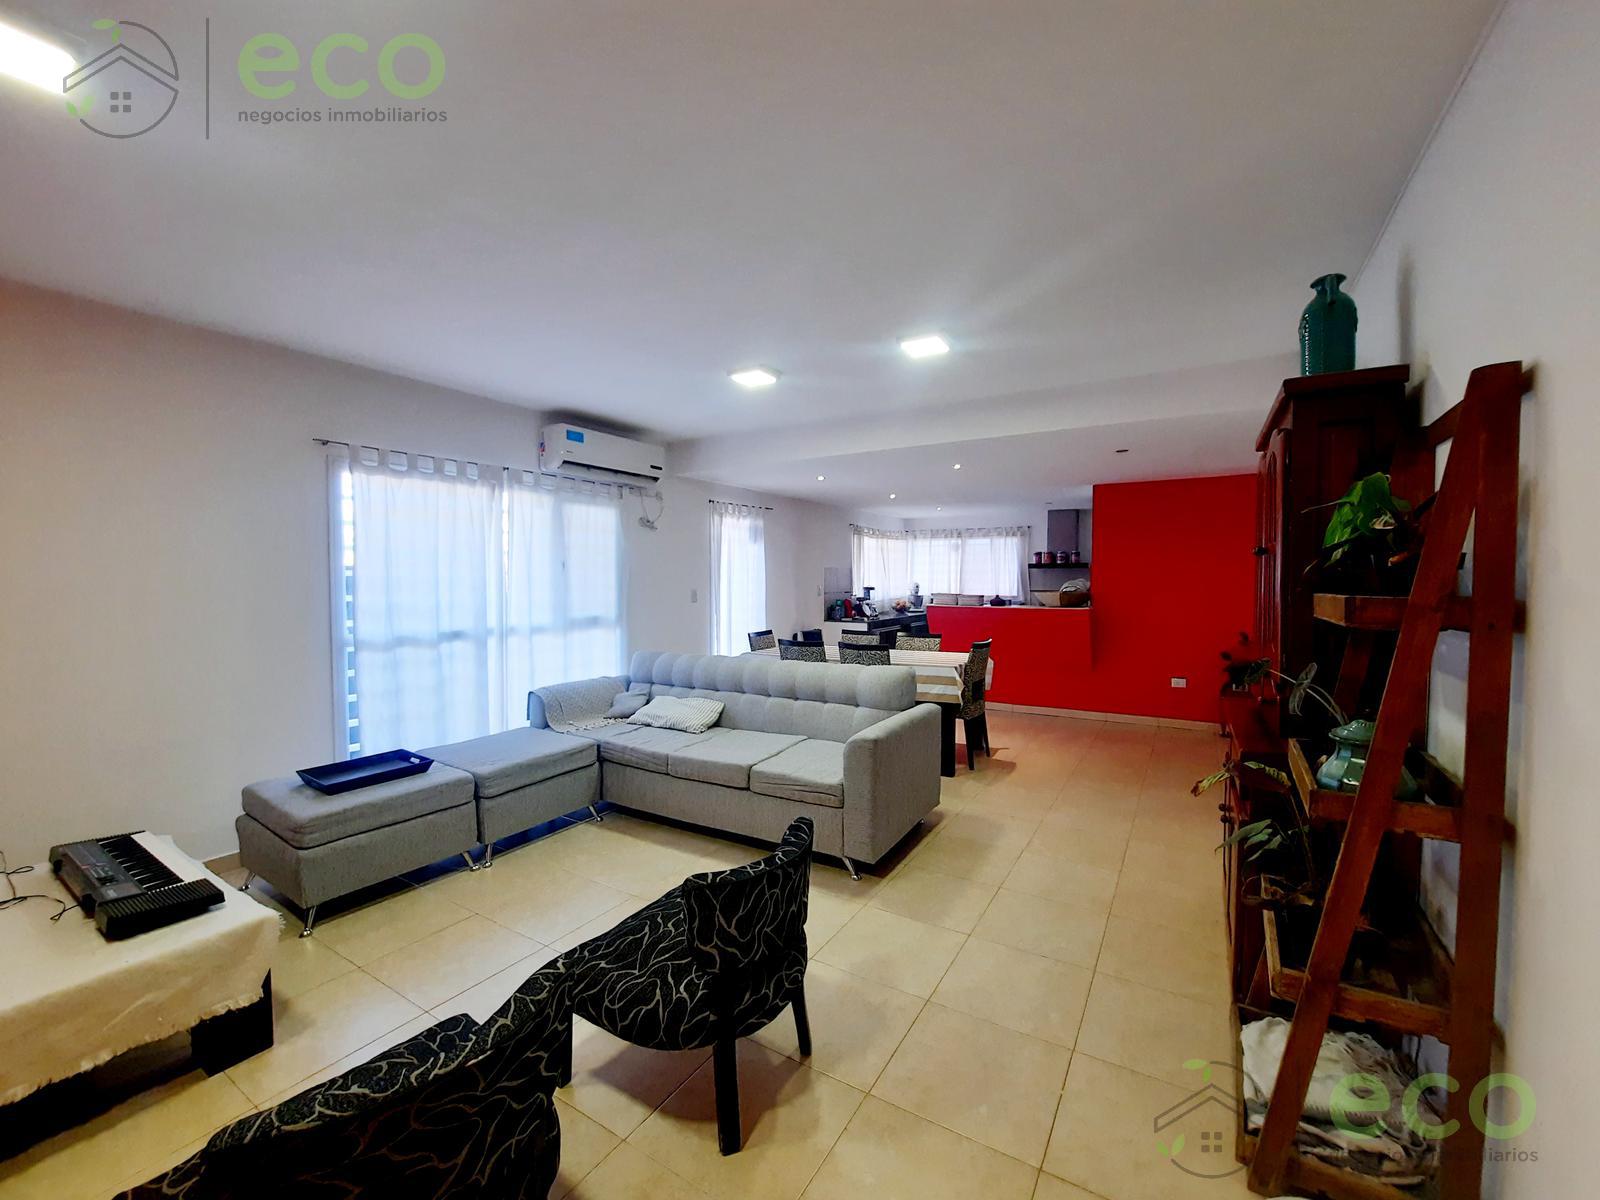 #5125985 | Venta | Casa | General Fernandez Oro (Eco Negocios Inmobiliarios)